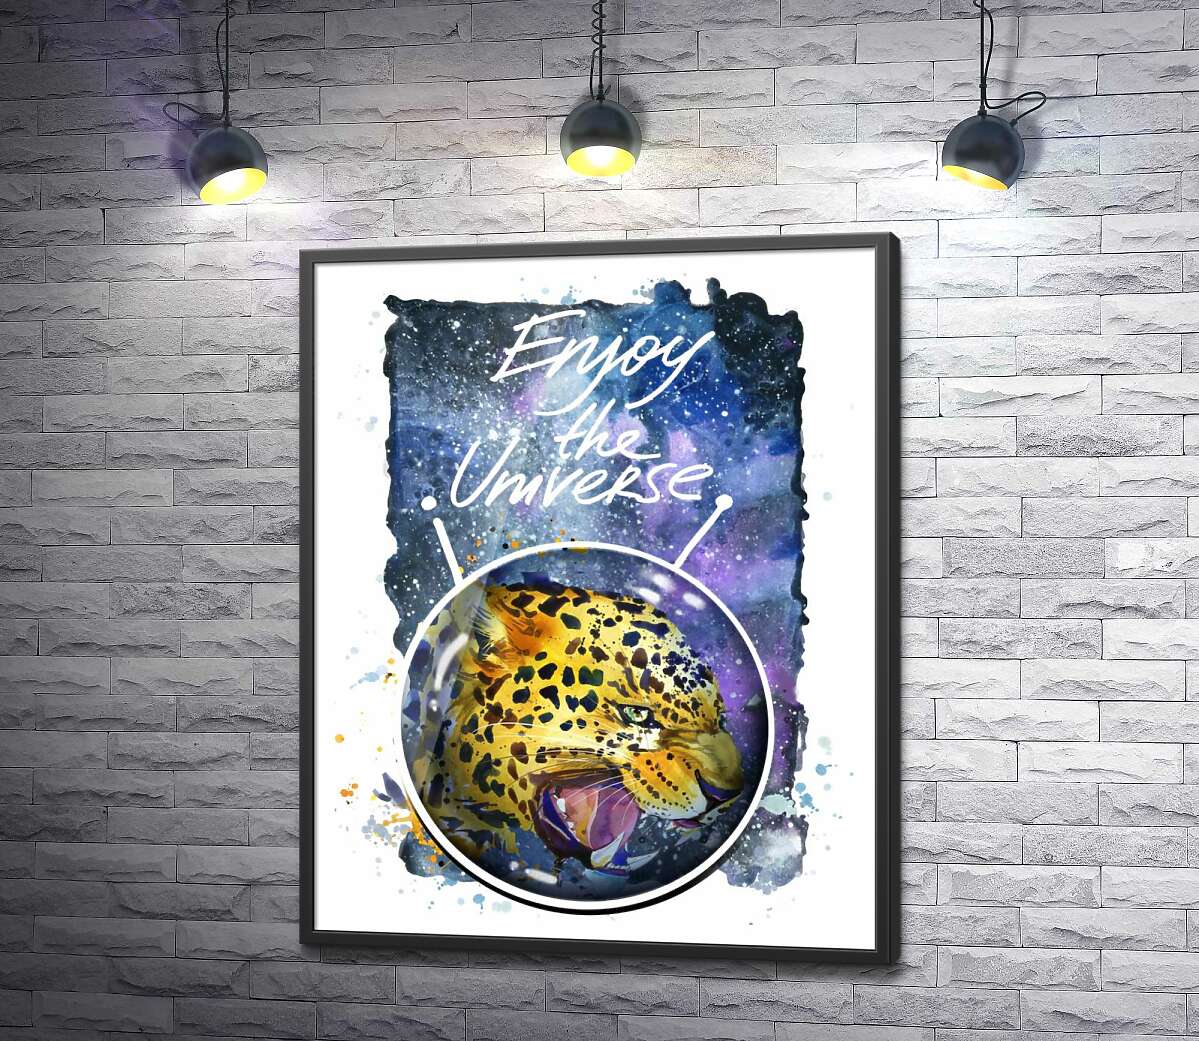 постер Хищный леопард скалит зубы в космосе с надписью "Enjoy the Universe"